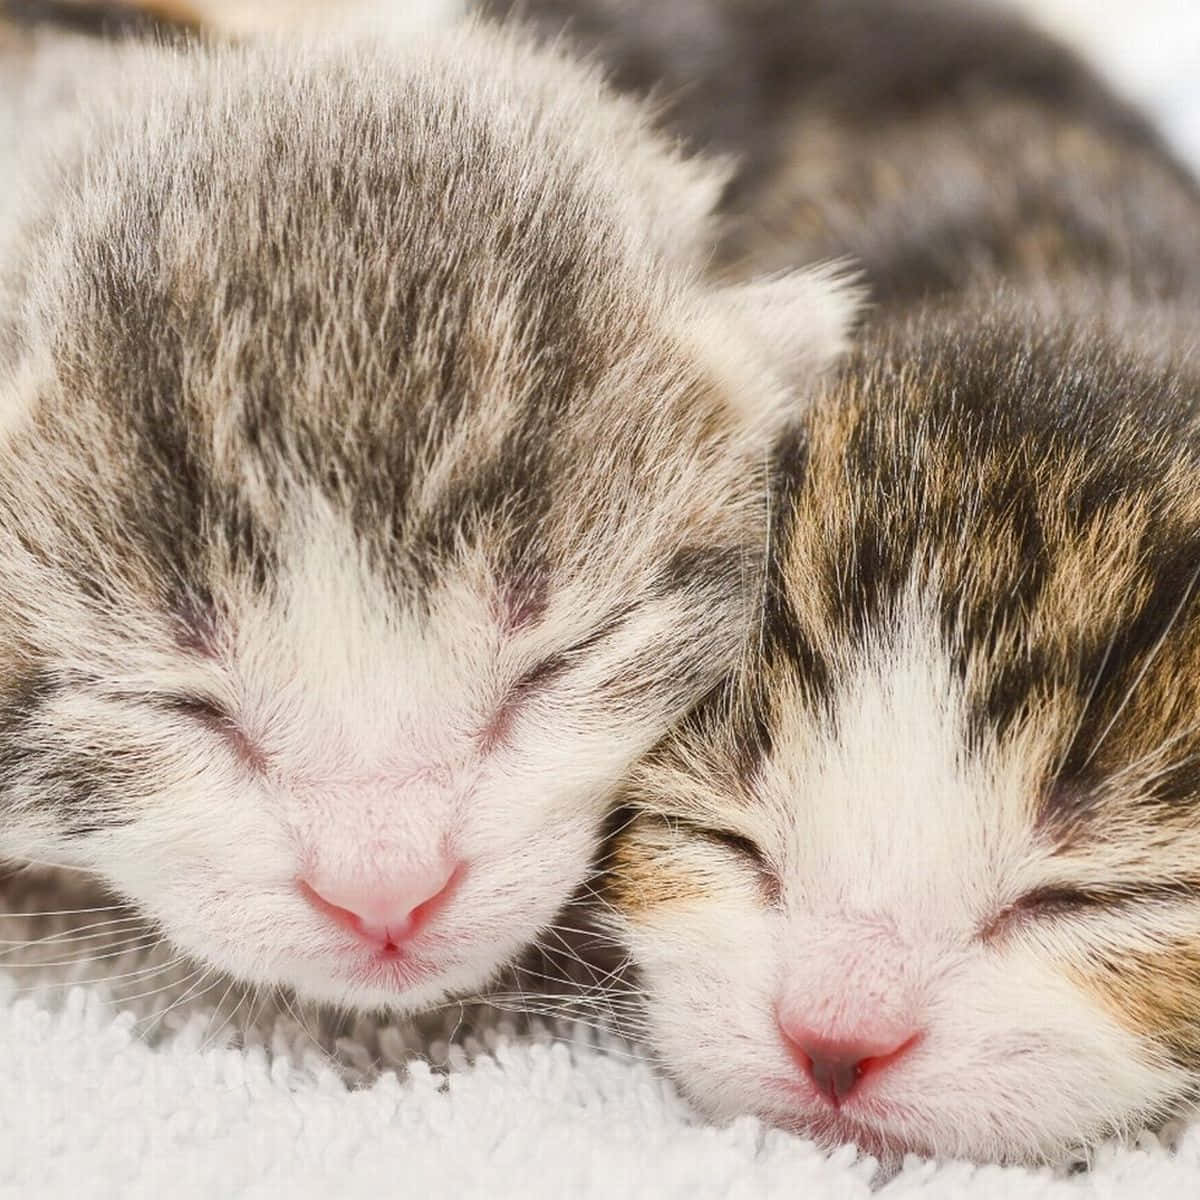 Newborn Cute Kittens Close Up Picture